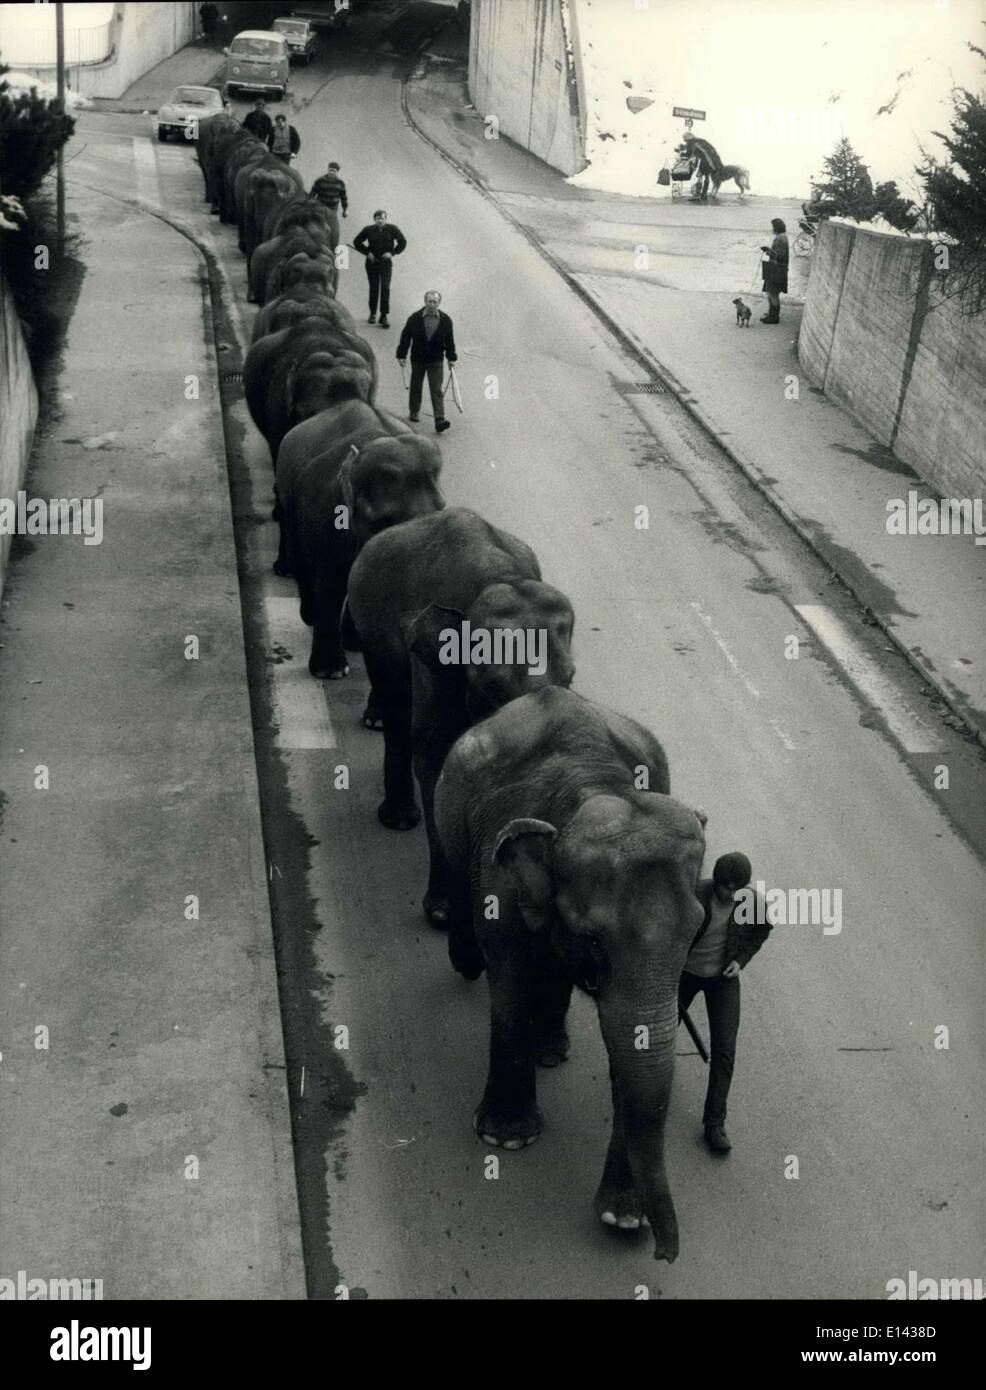 Mar 31, 2012 - Elephant walk nei primi giorni di primavera. La nazionale svizzera di circo Knie ora presto lascerà il suo accampamento invernale in Rappesrwill. In questi ultimi giorni tranquilli fortunatamente la prima molla affascinante-giorni, la grande famiglia di elefante, composto fo 14 membri, si spegne per una piacevole passeggiata nella strada di Rapperswill. Keystone Zurigo 10-3-70 Foto Stock